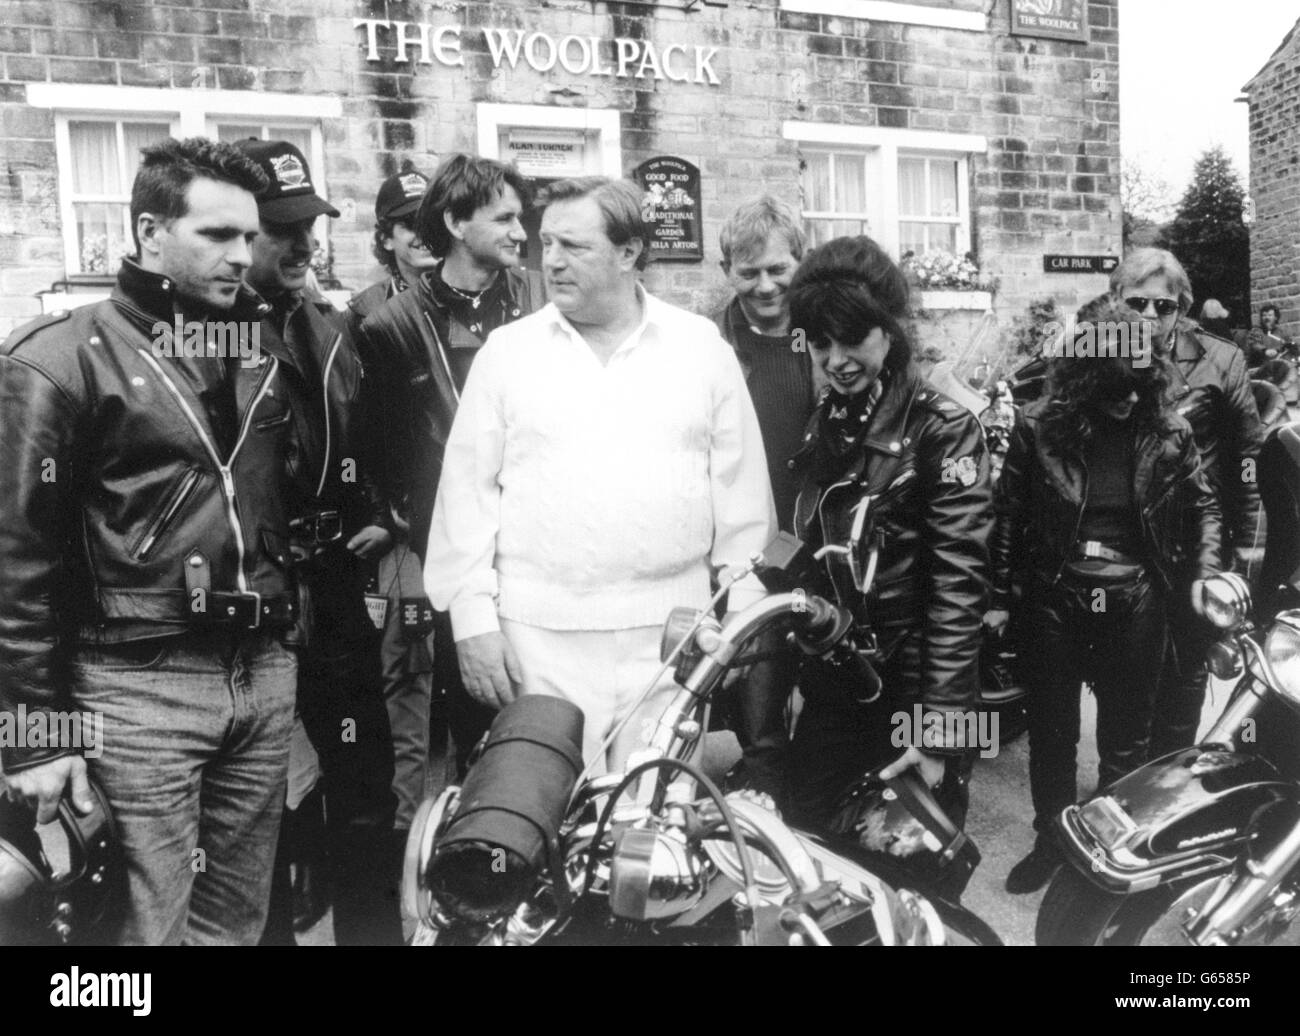 Alan Turner (joué par Richard Thorp) rencontre un tas d'anges de Harley alors qu'il quitte le Woolpack pour la fête à Home Farm lors d'un épisode d'Emmerdale de Yorkshire Television. Banque D'Images